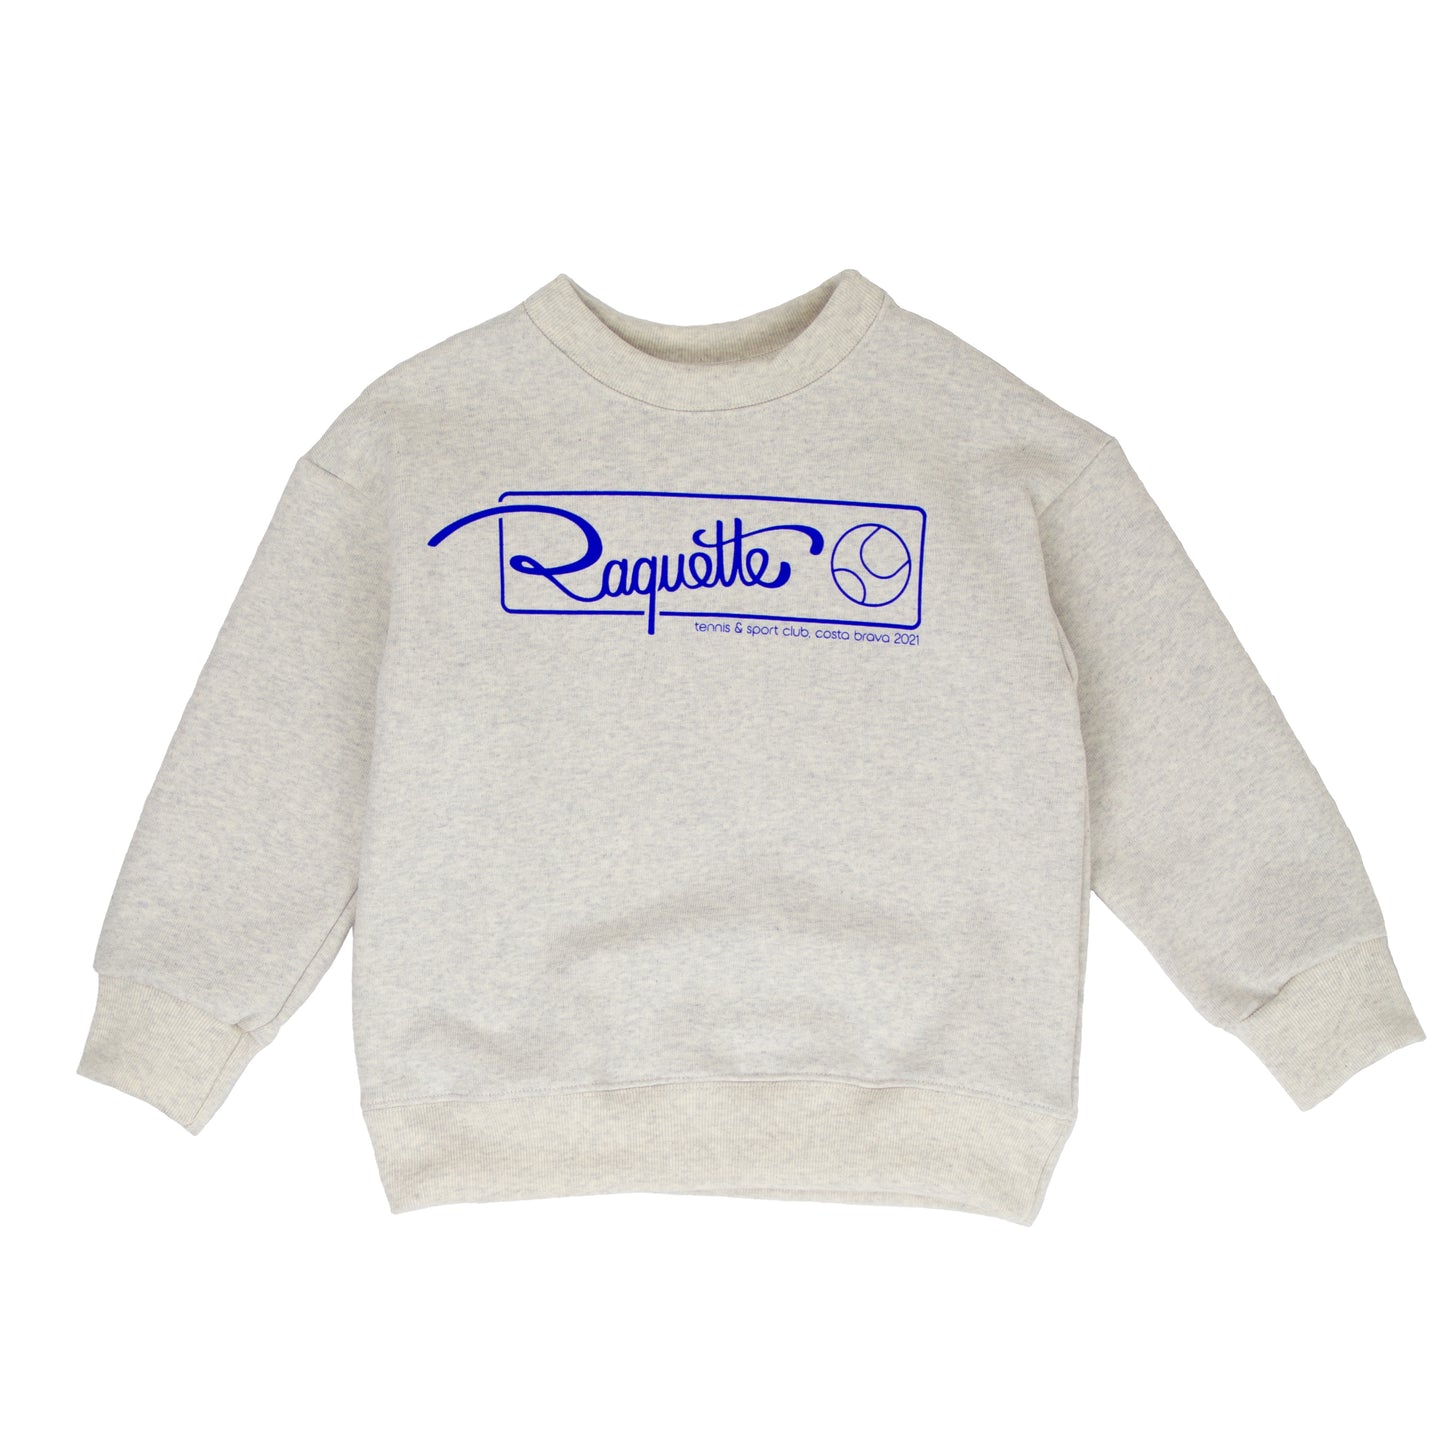 Raquette Club Sweater